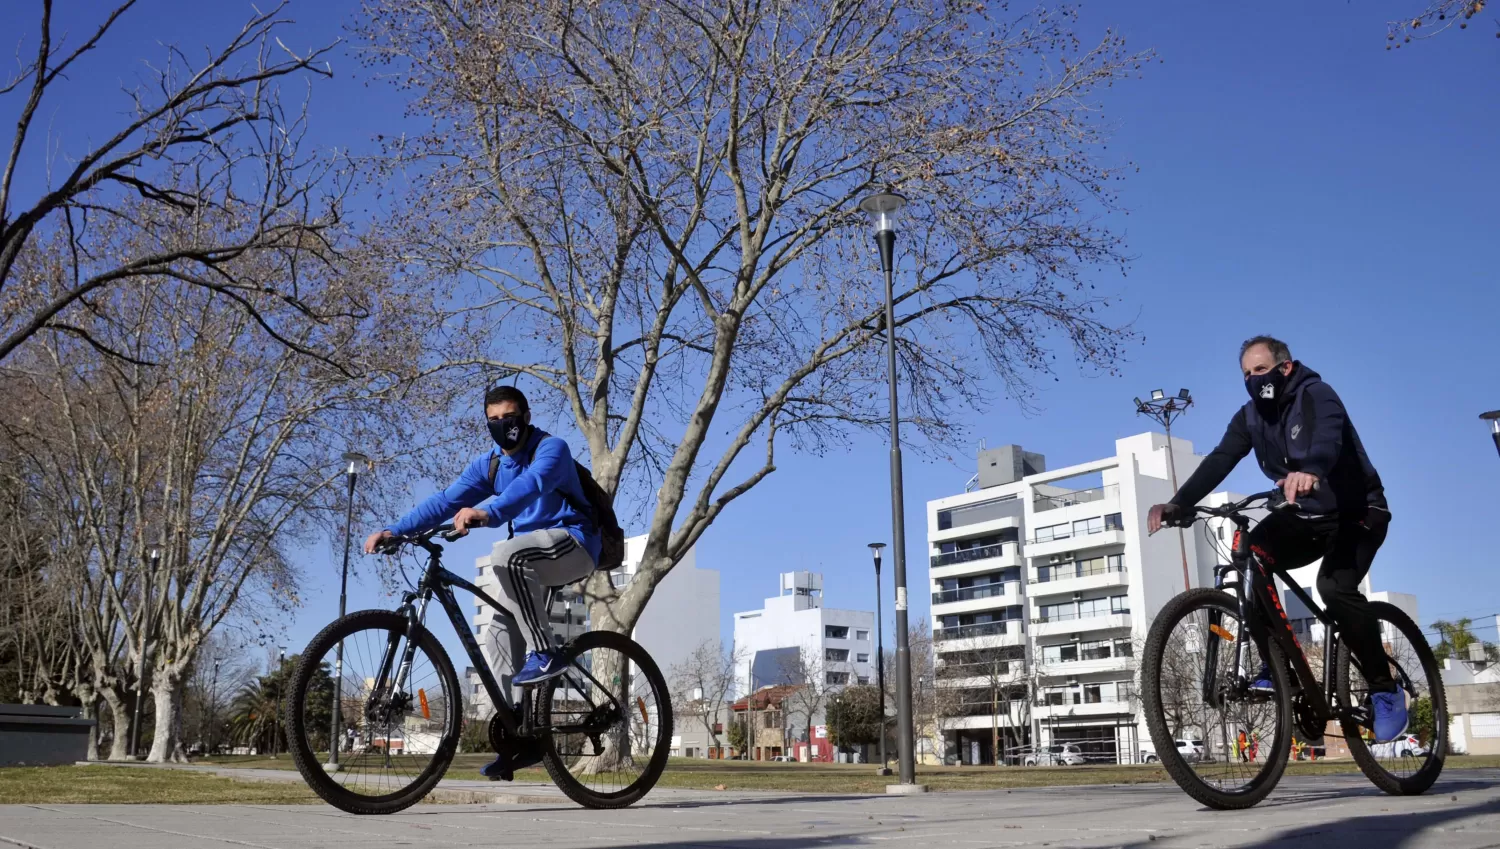 OPORTUNIDAD. La pandemia de covid-19 le dio un nuevo impulso al uso de la bicicleta, que ya venía siendo promovido por algu as ciudades.